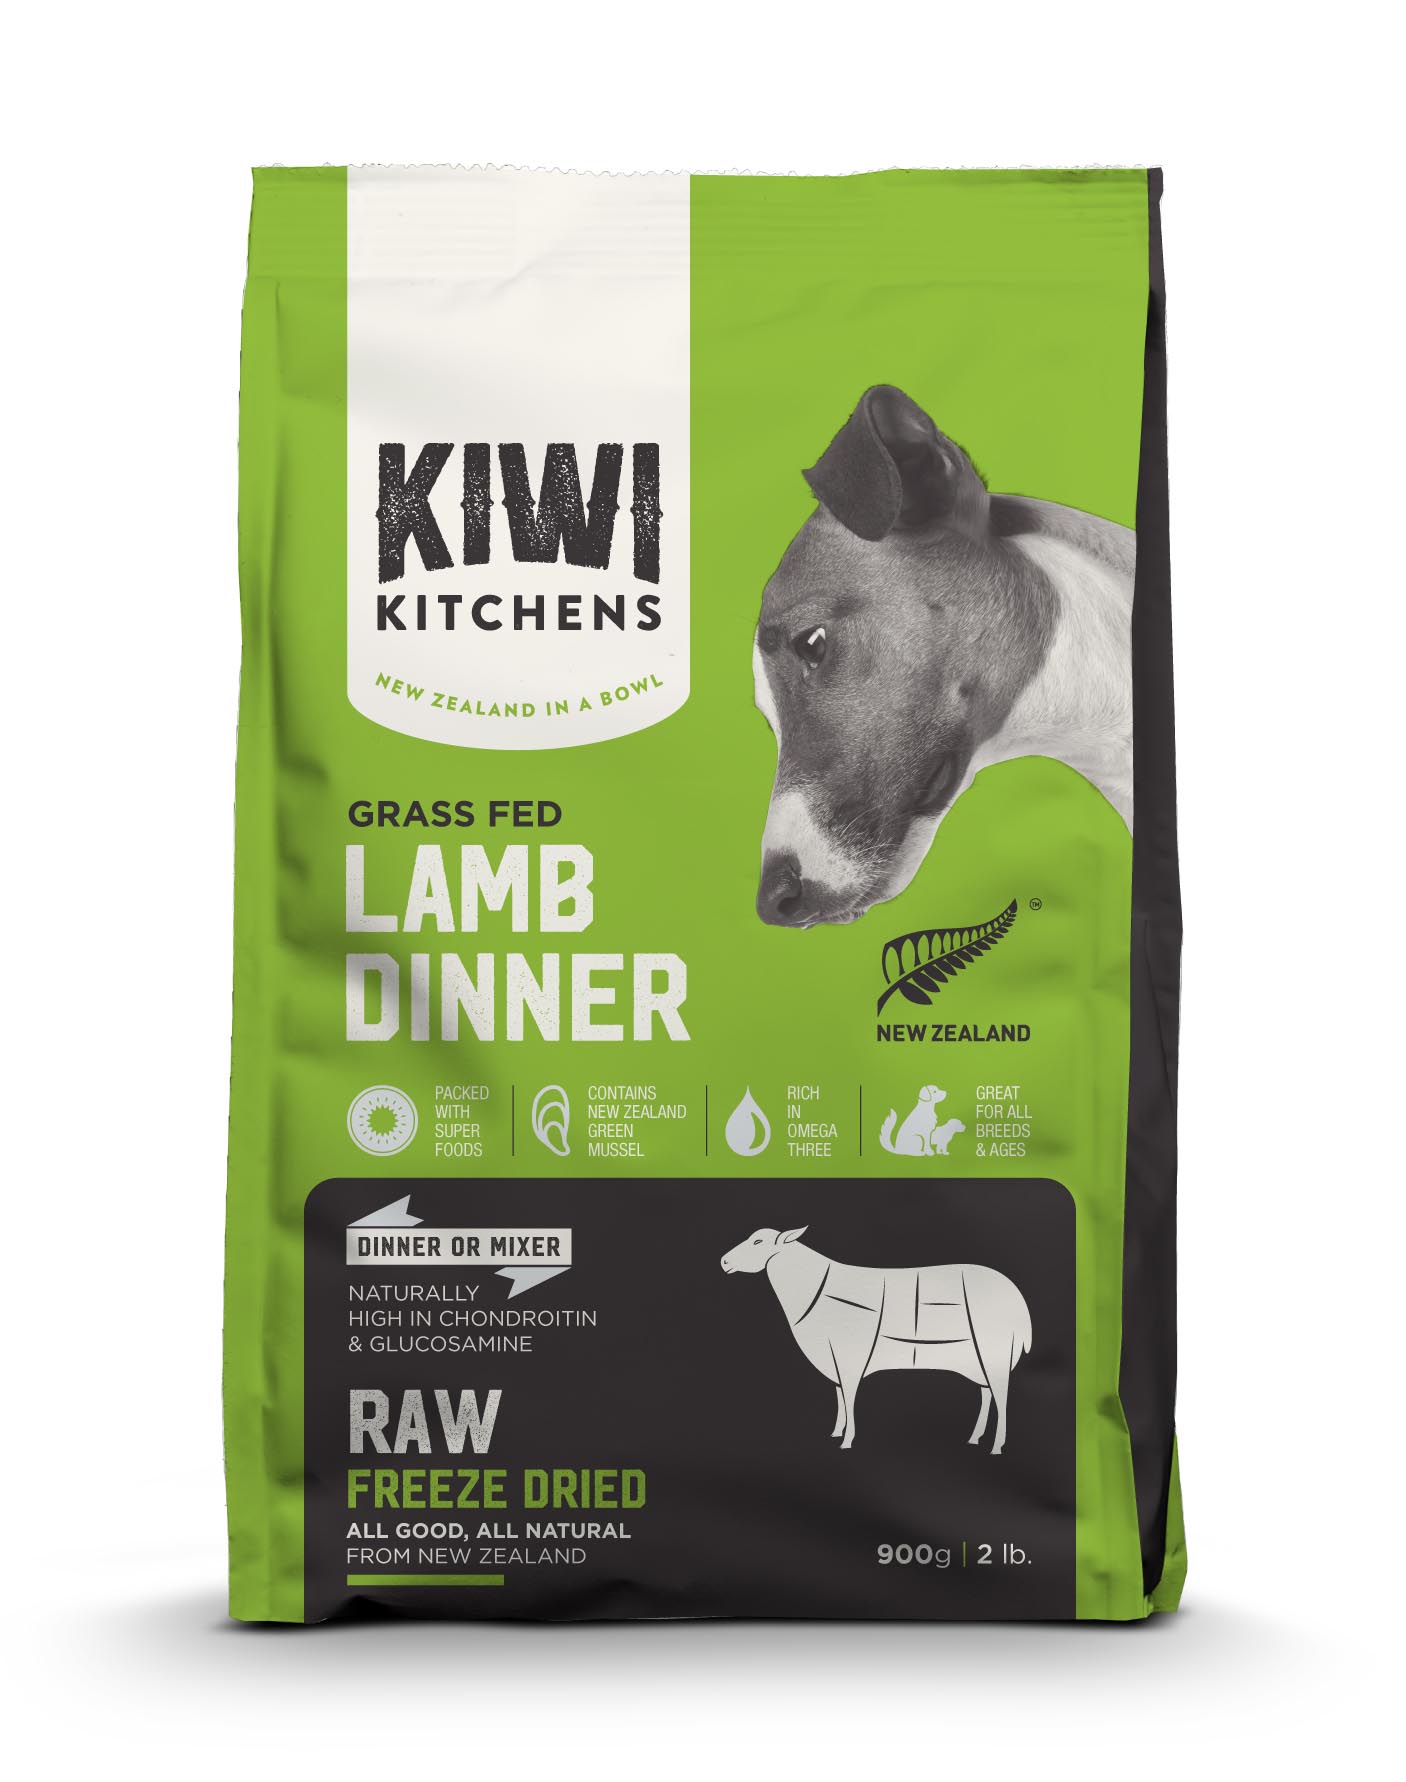 奇異廚房 鮮肉生食饗宴 草原嫩羊佐鮭魚綠唇貝
Kiwi Kitchens Lamb Dinner